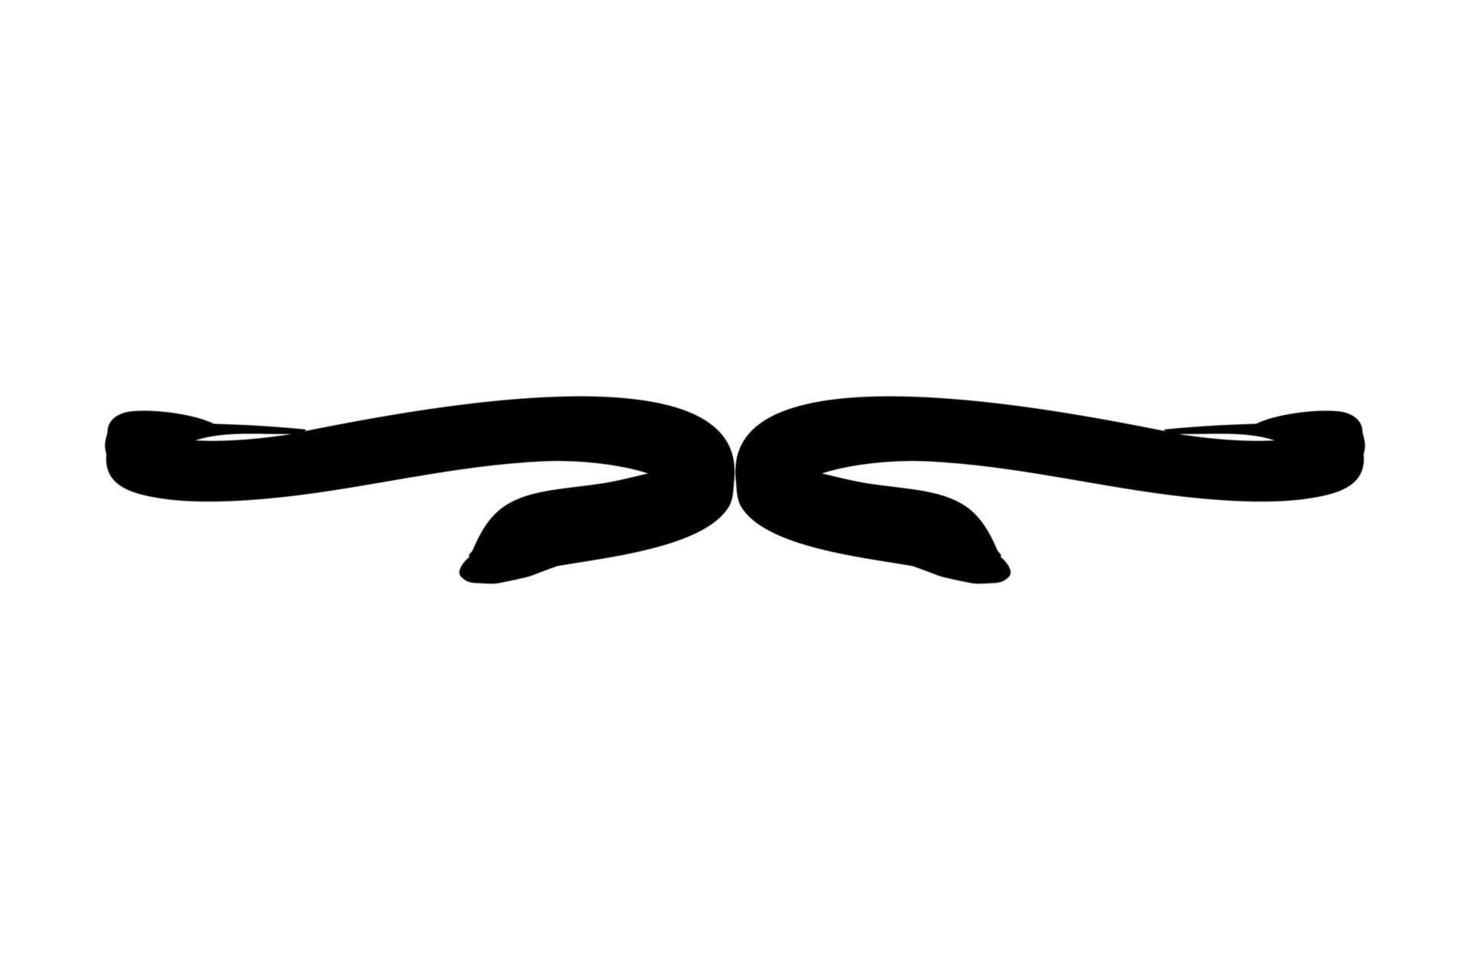 silueta de anguila para logotipo, pictograma, sitio web, aplicaciones o elemento de diseño gráfico. ilustración vectorial vector